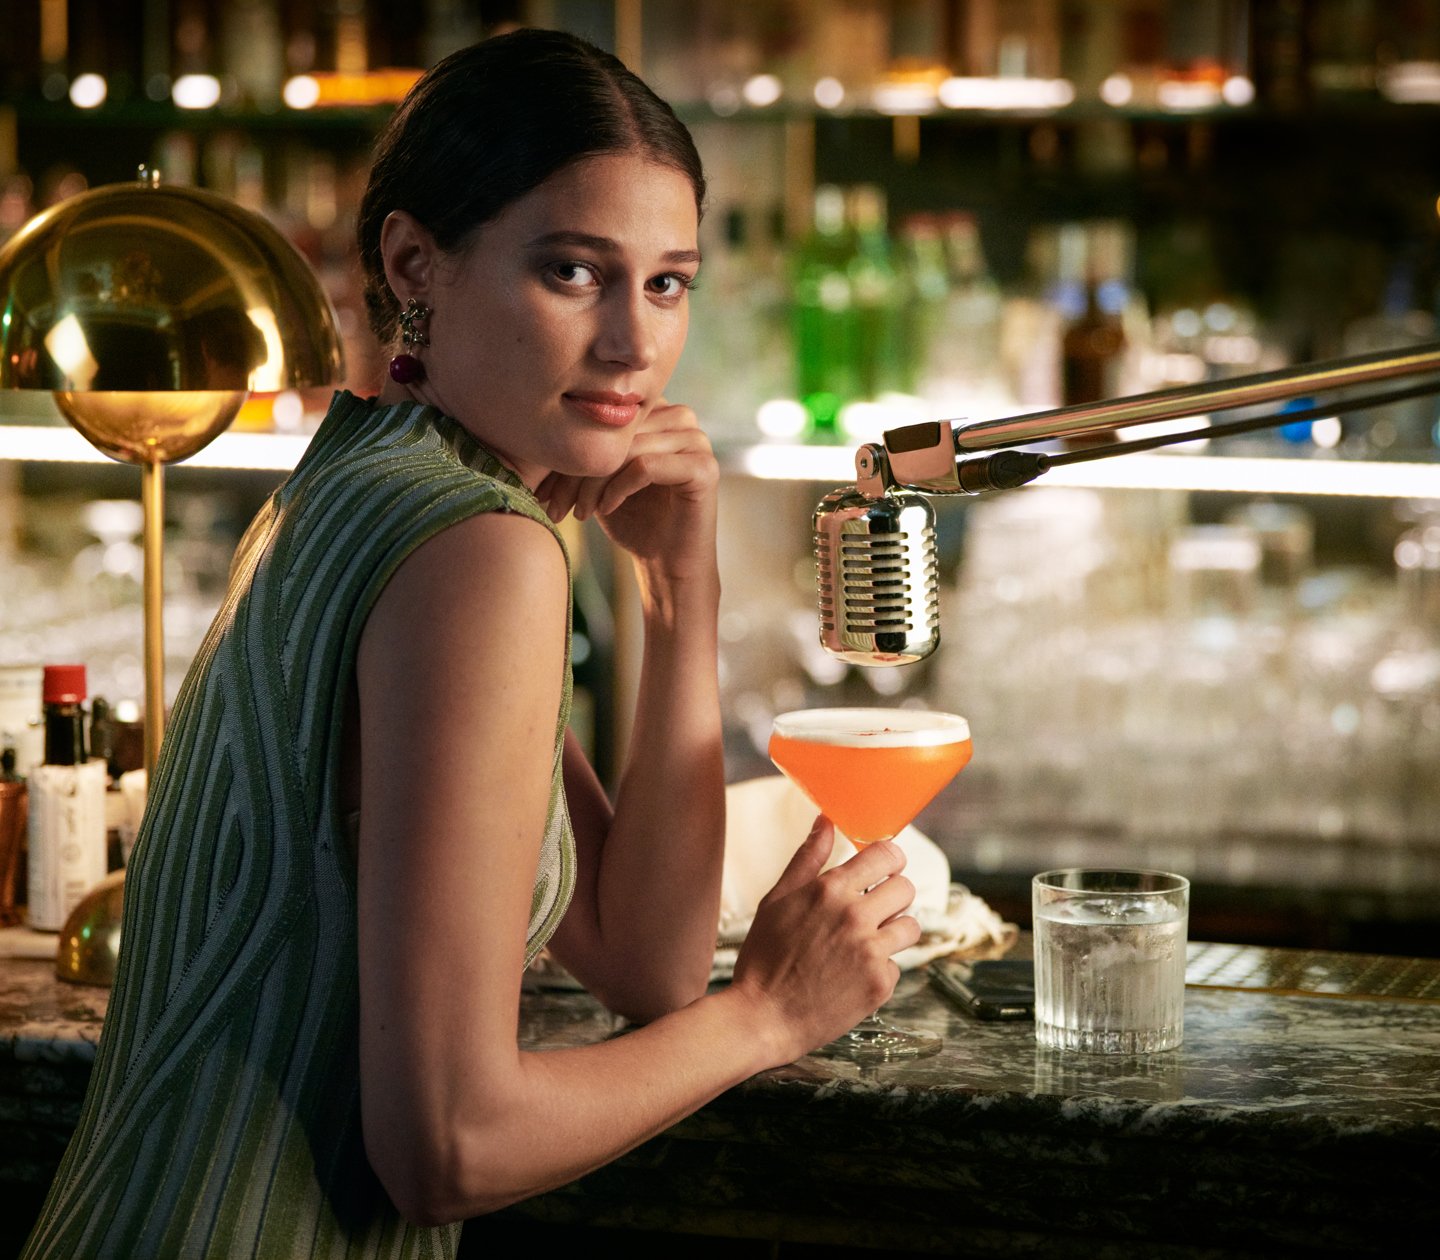 Kvinna i grön klänning som sitter vid bar med orange drink i handen och mikrofon över